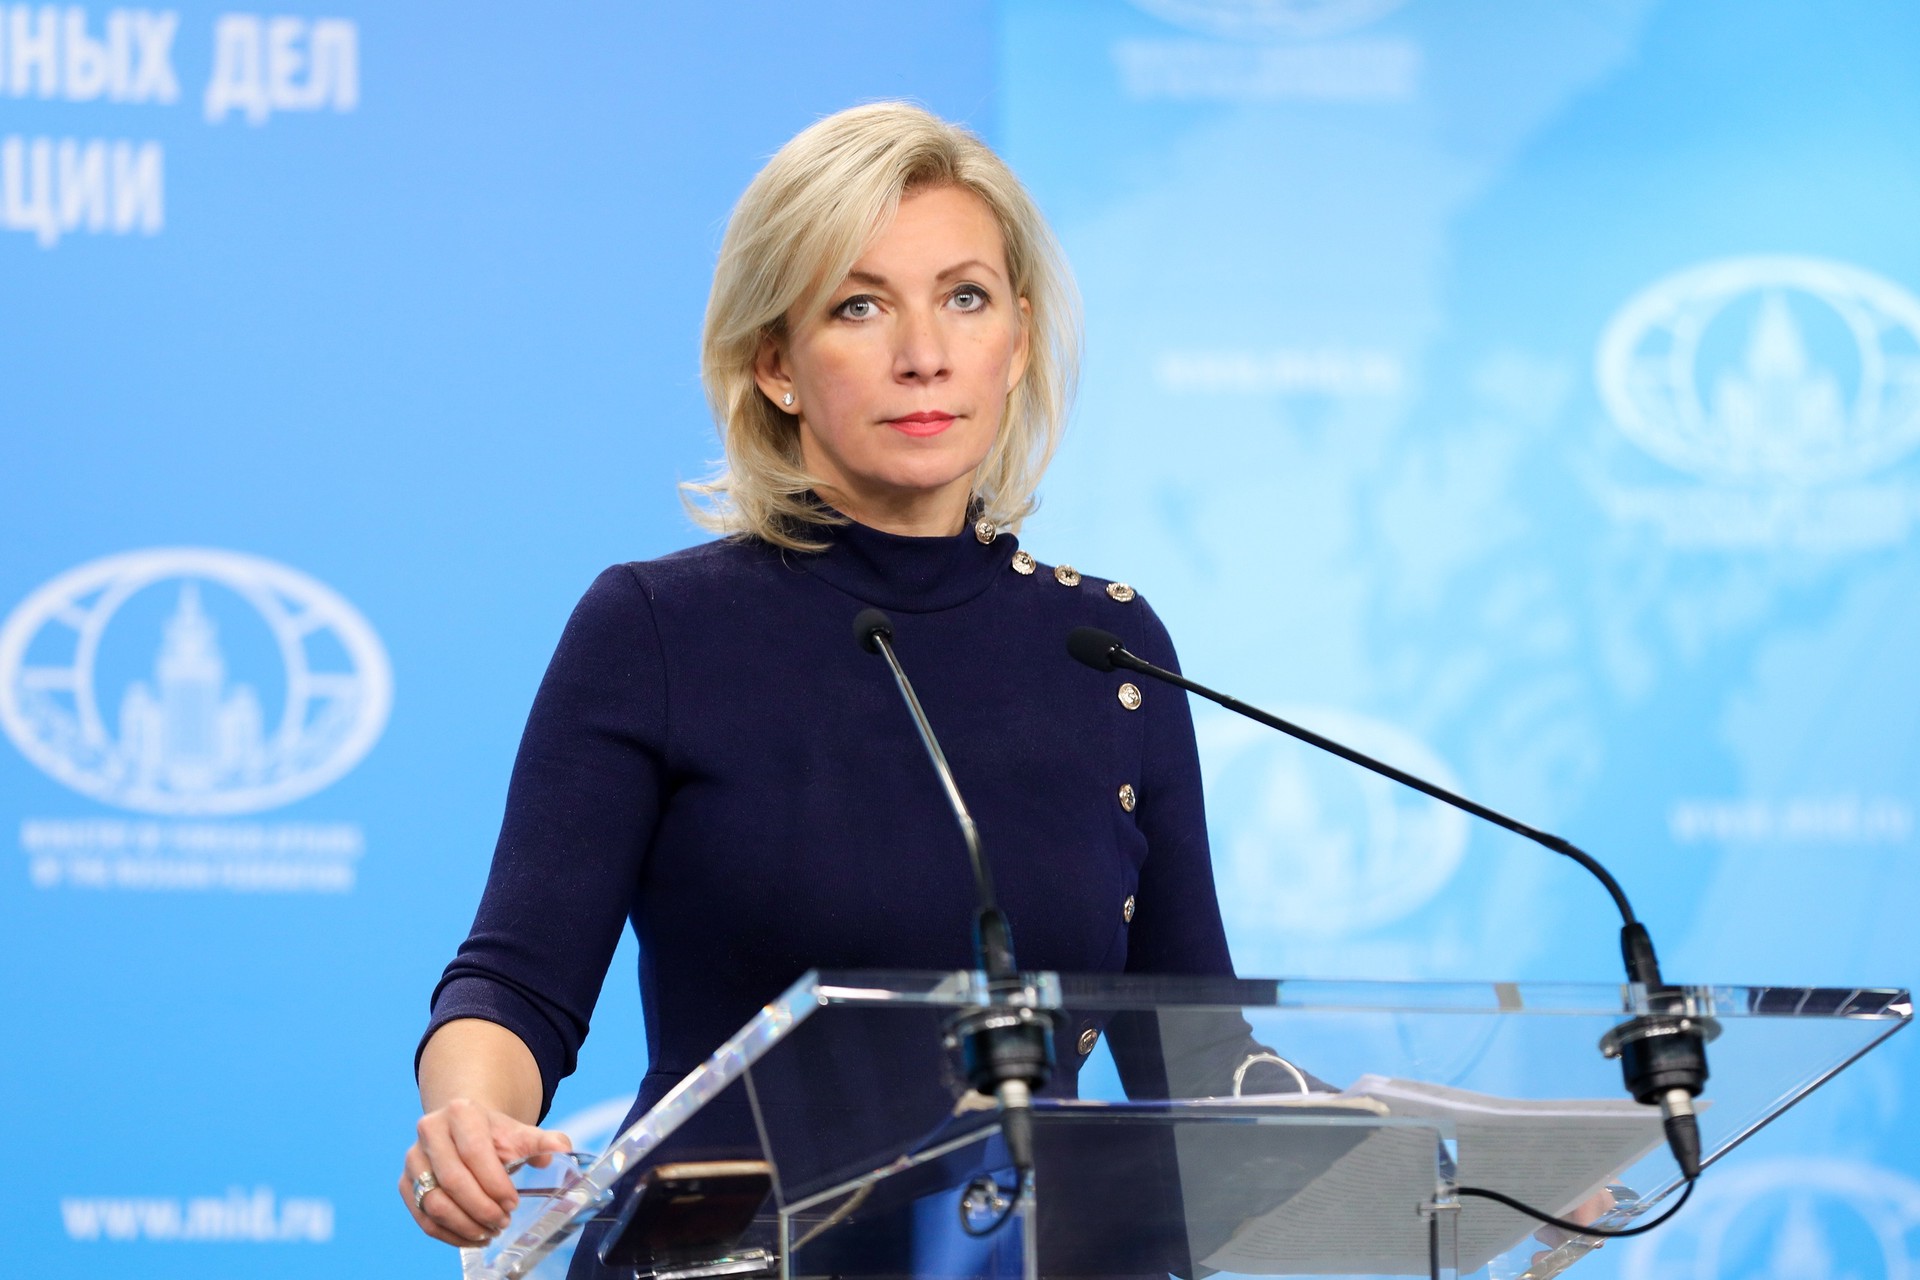 Захарова отреагировала на решение генсека ООН не смотреть интервью Путина журналисту Карлсону